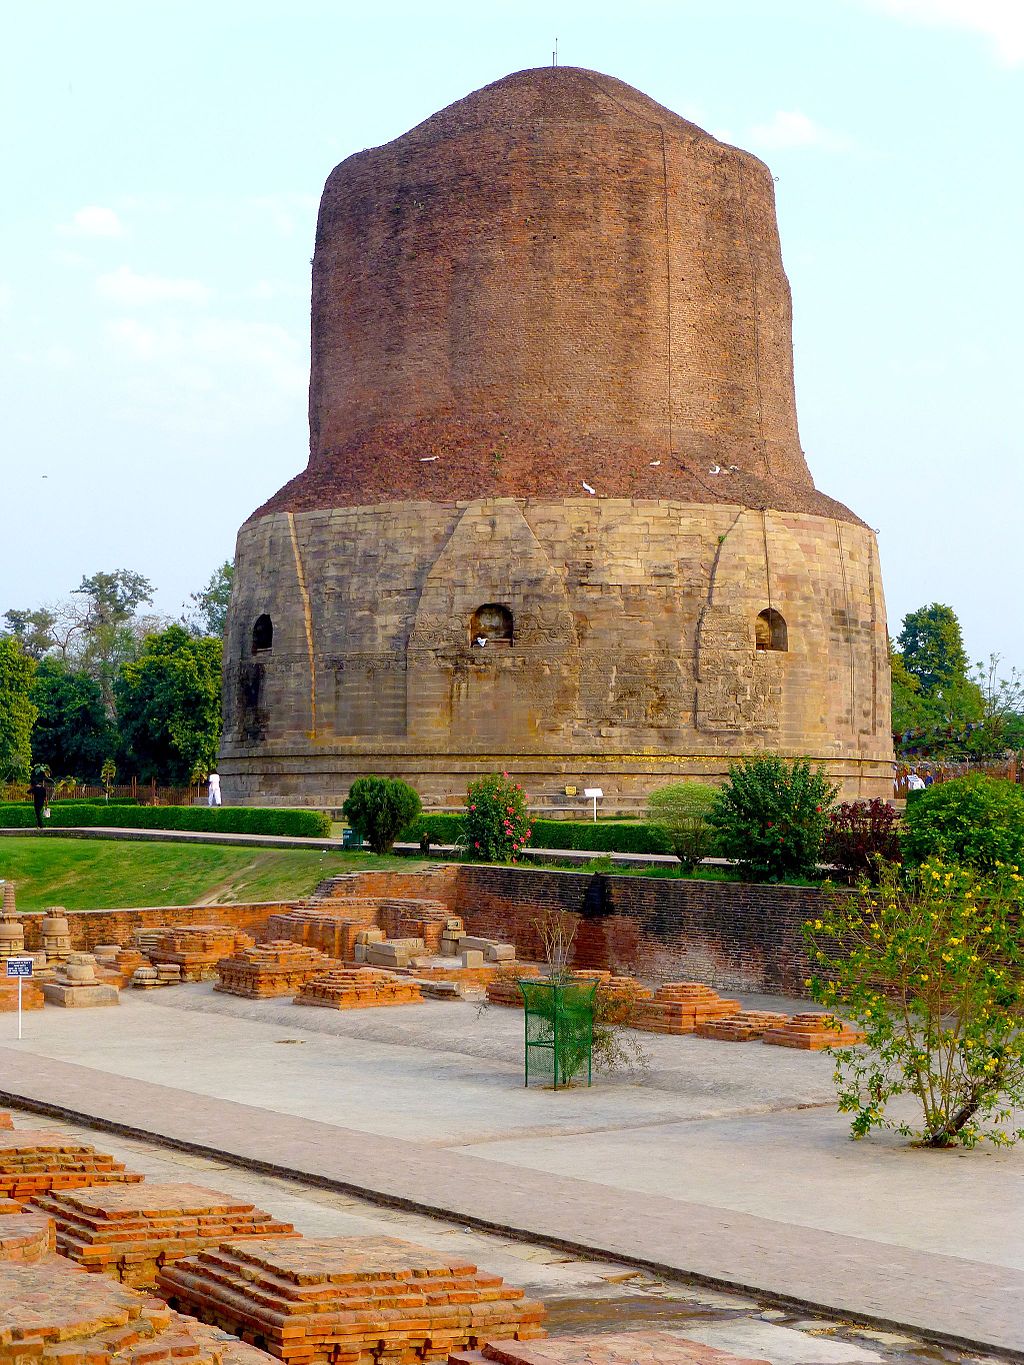 Dhamek Stupa, c. 5th–6th century (Sarnath, Uttar Pradesh, India) (photo: Anandajoti Bhikkhu, CC BY 2.0)